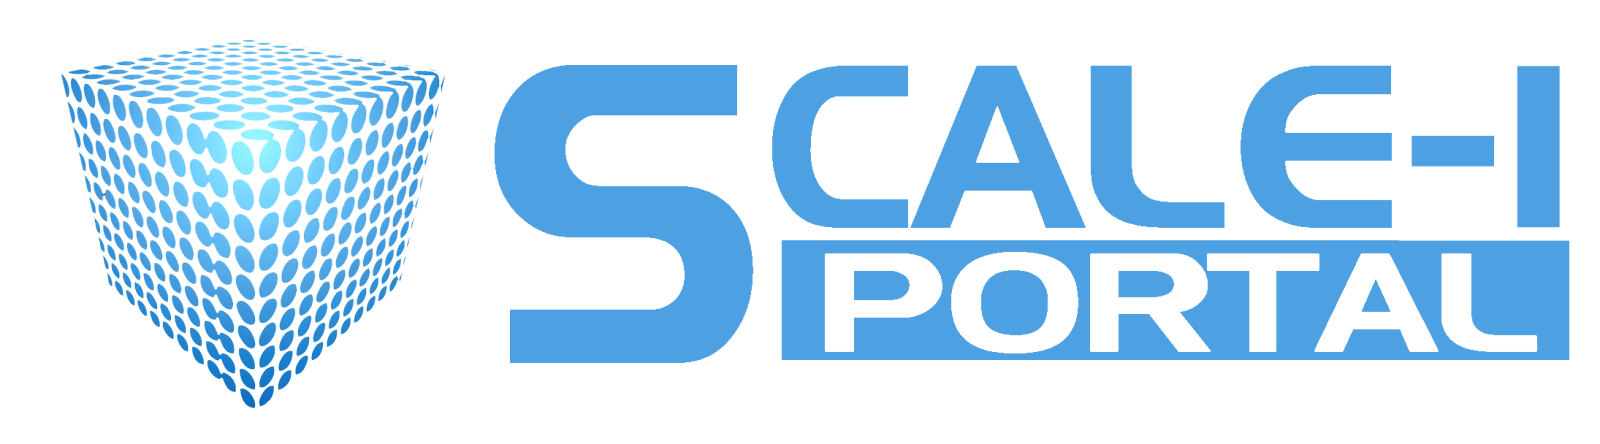 Scale-1 Portal